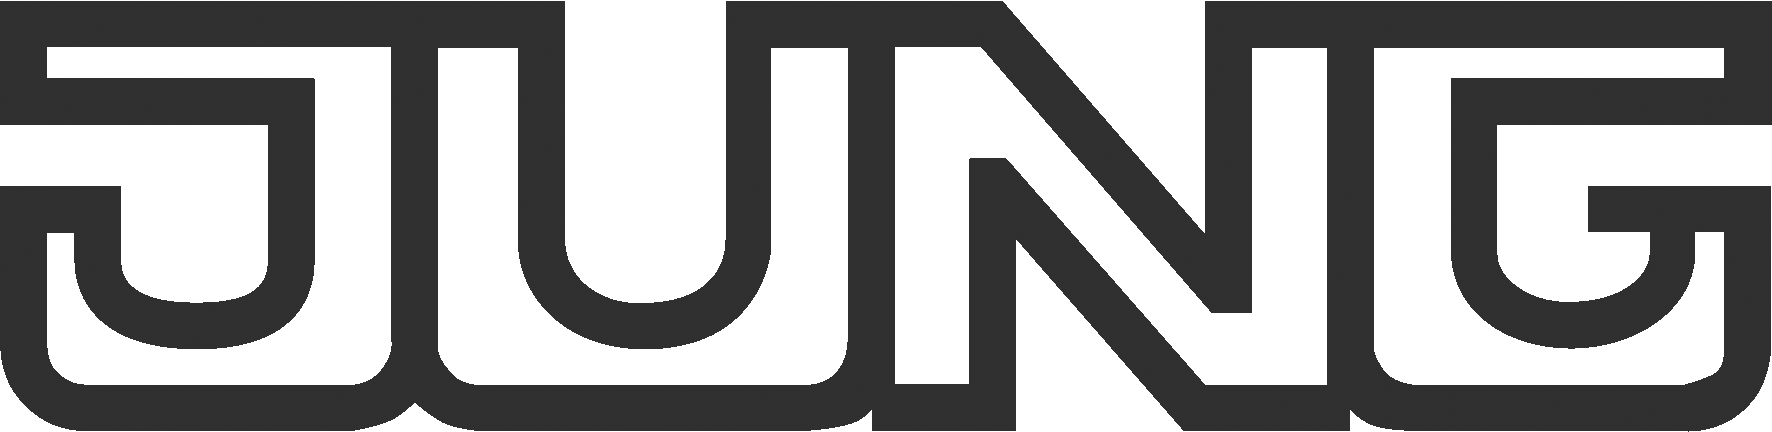 jung_logo